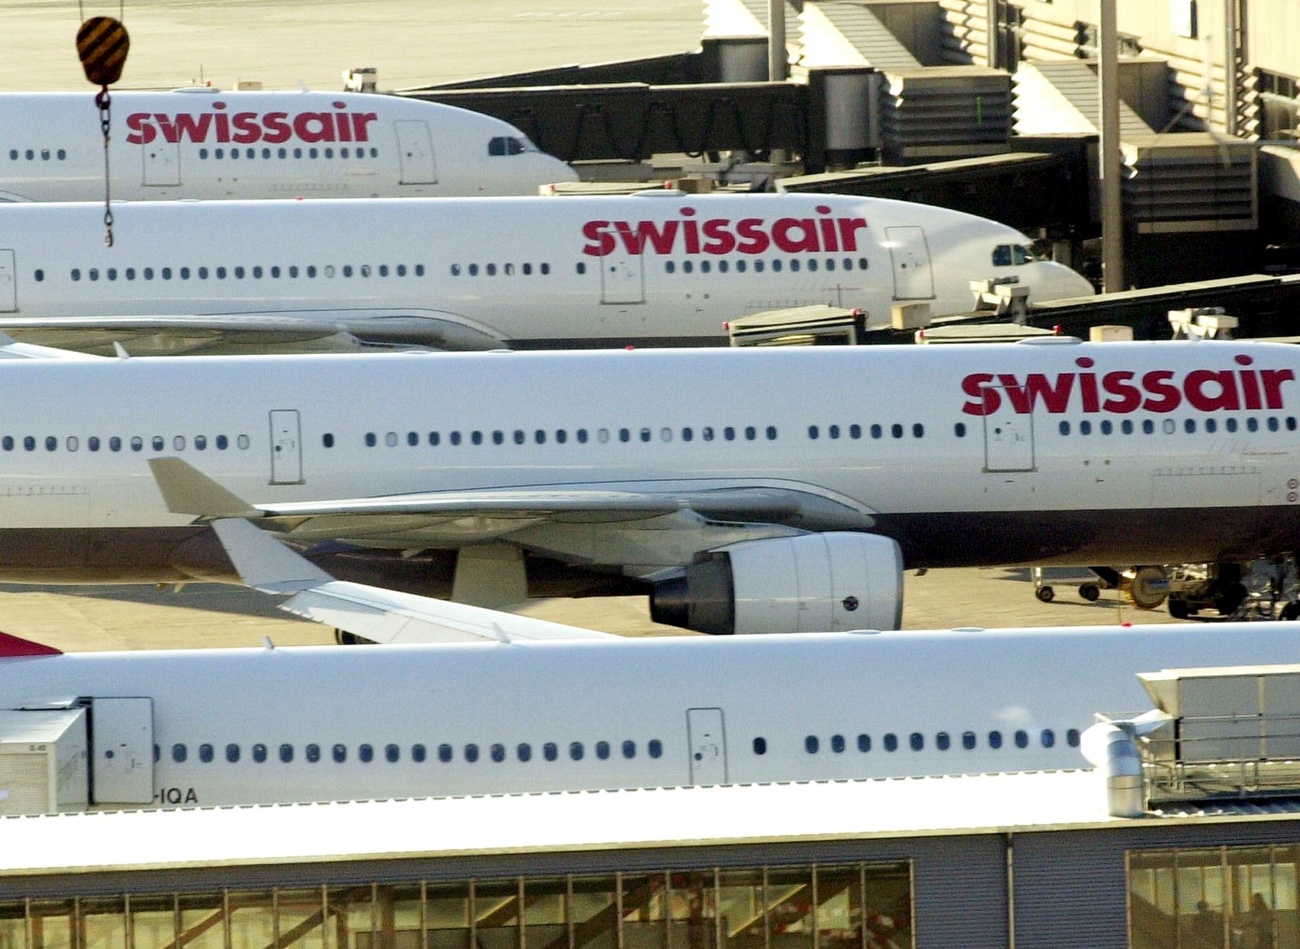 Swissair aircraft